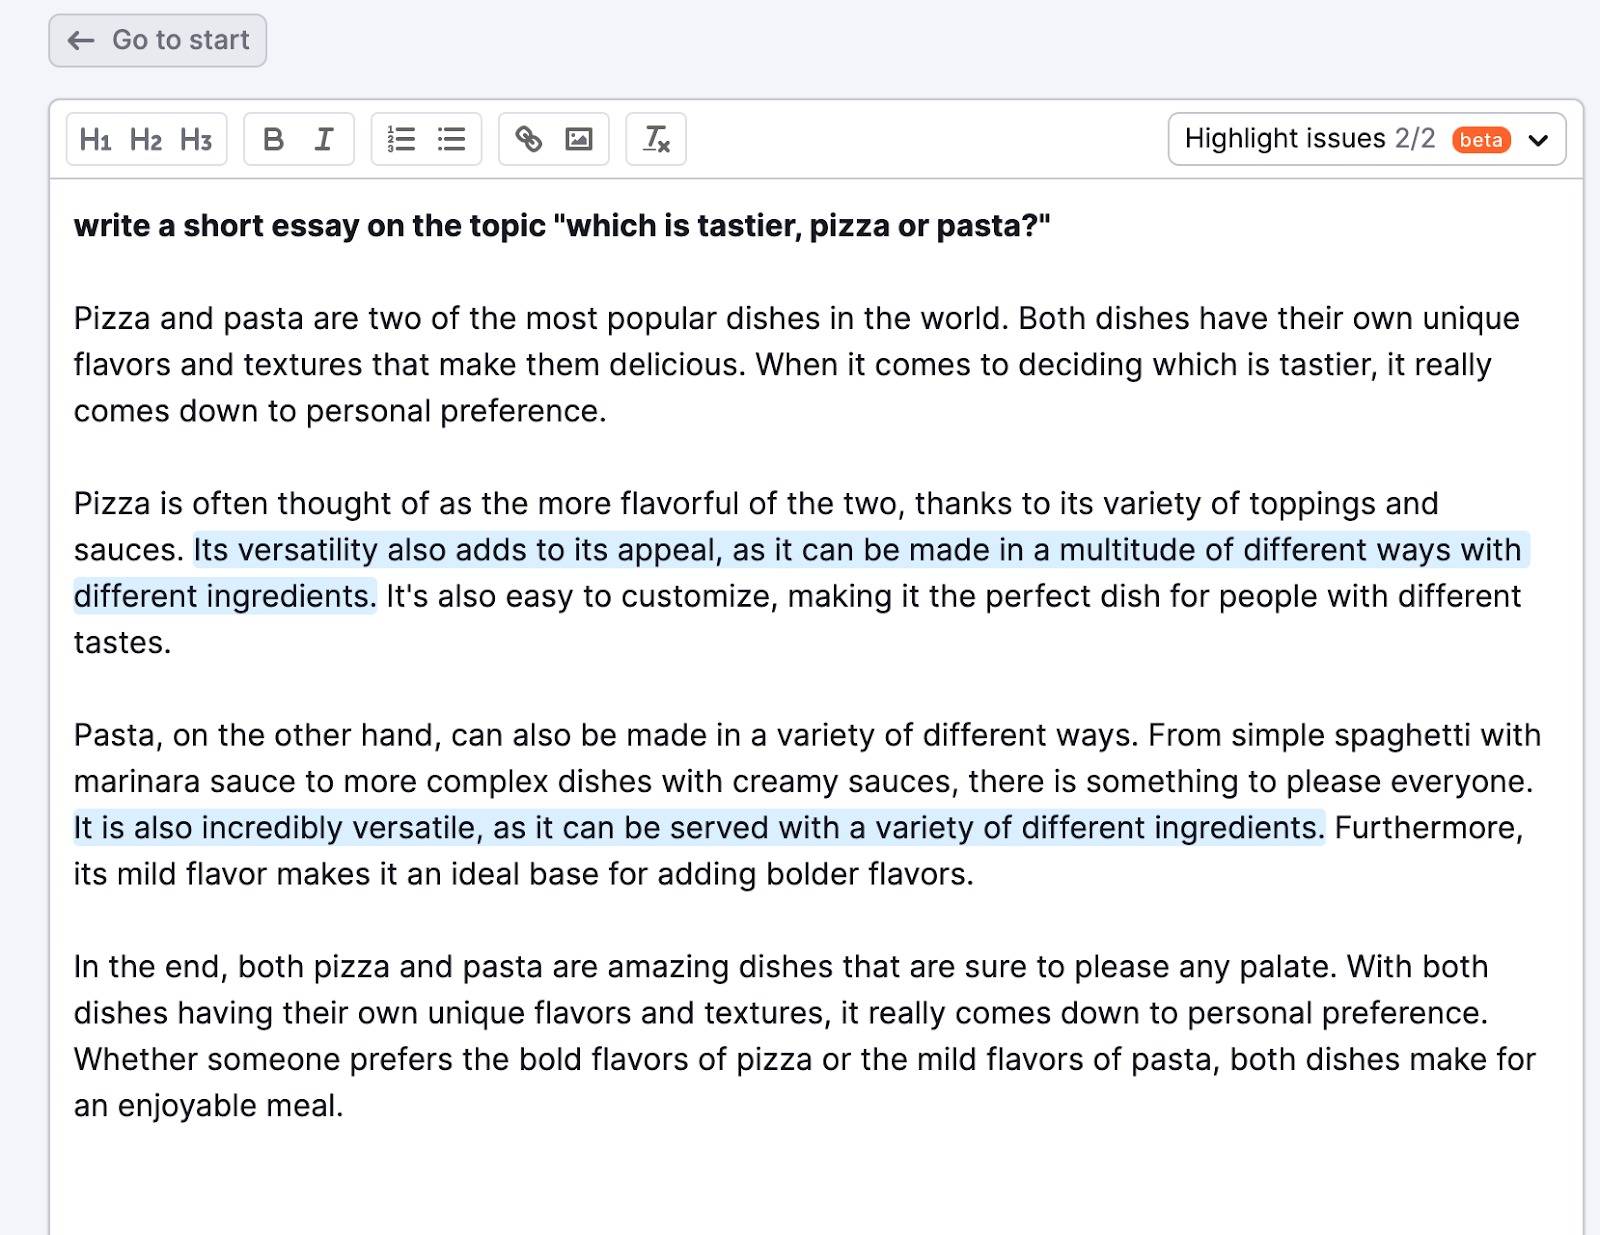 Exemple illustrant la fonctionnalité « Rédiger avec l’IA ». Dans cet exemple, l’utilisateur demande à l’outil de rédiger un petit texte sur le thème « Qu’est-ce qui est le plus savoureux, la pizza ou les pâtes ? ». L’outil répond alors à la question en quatre paragraphes. 